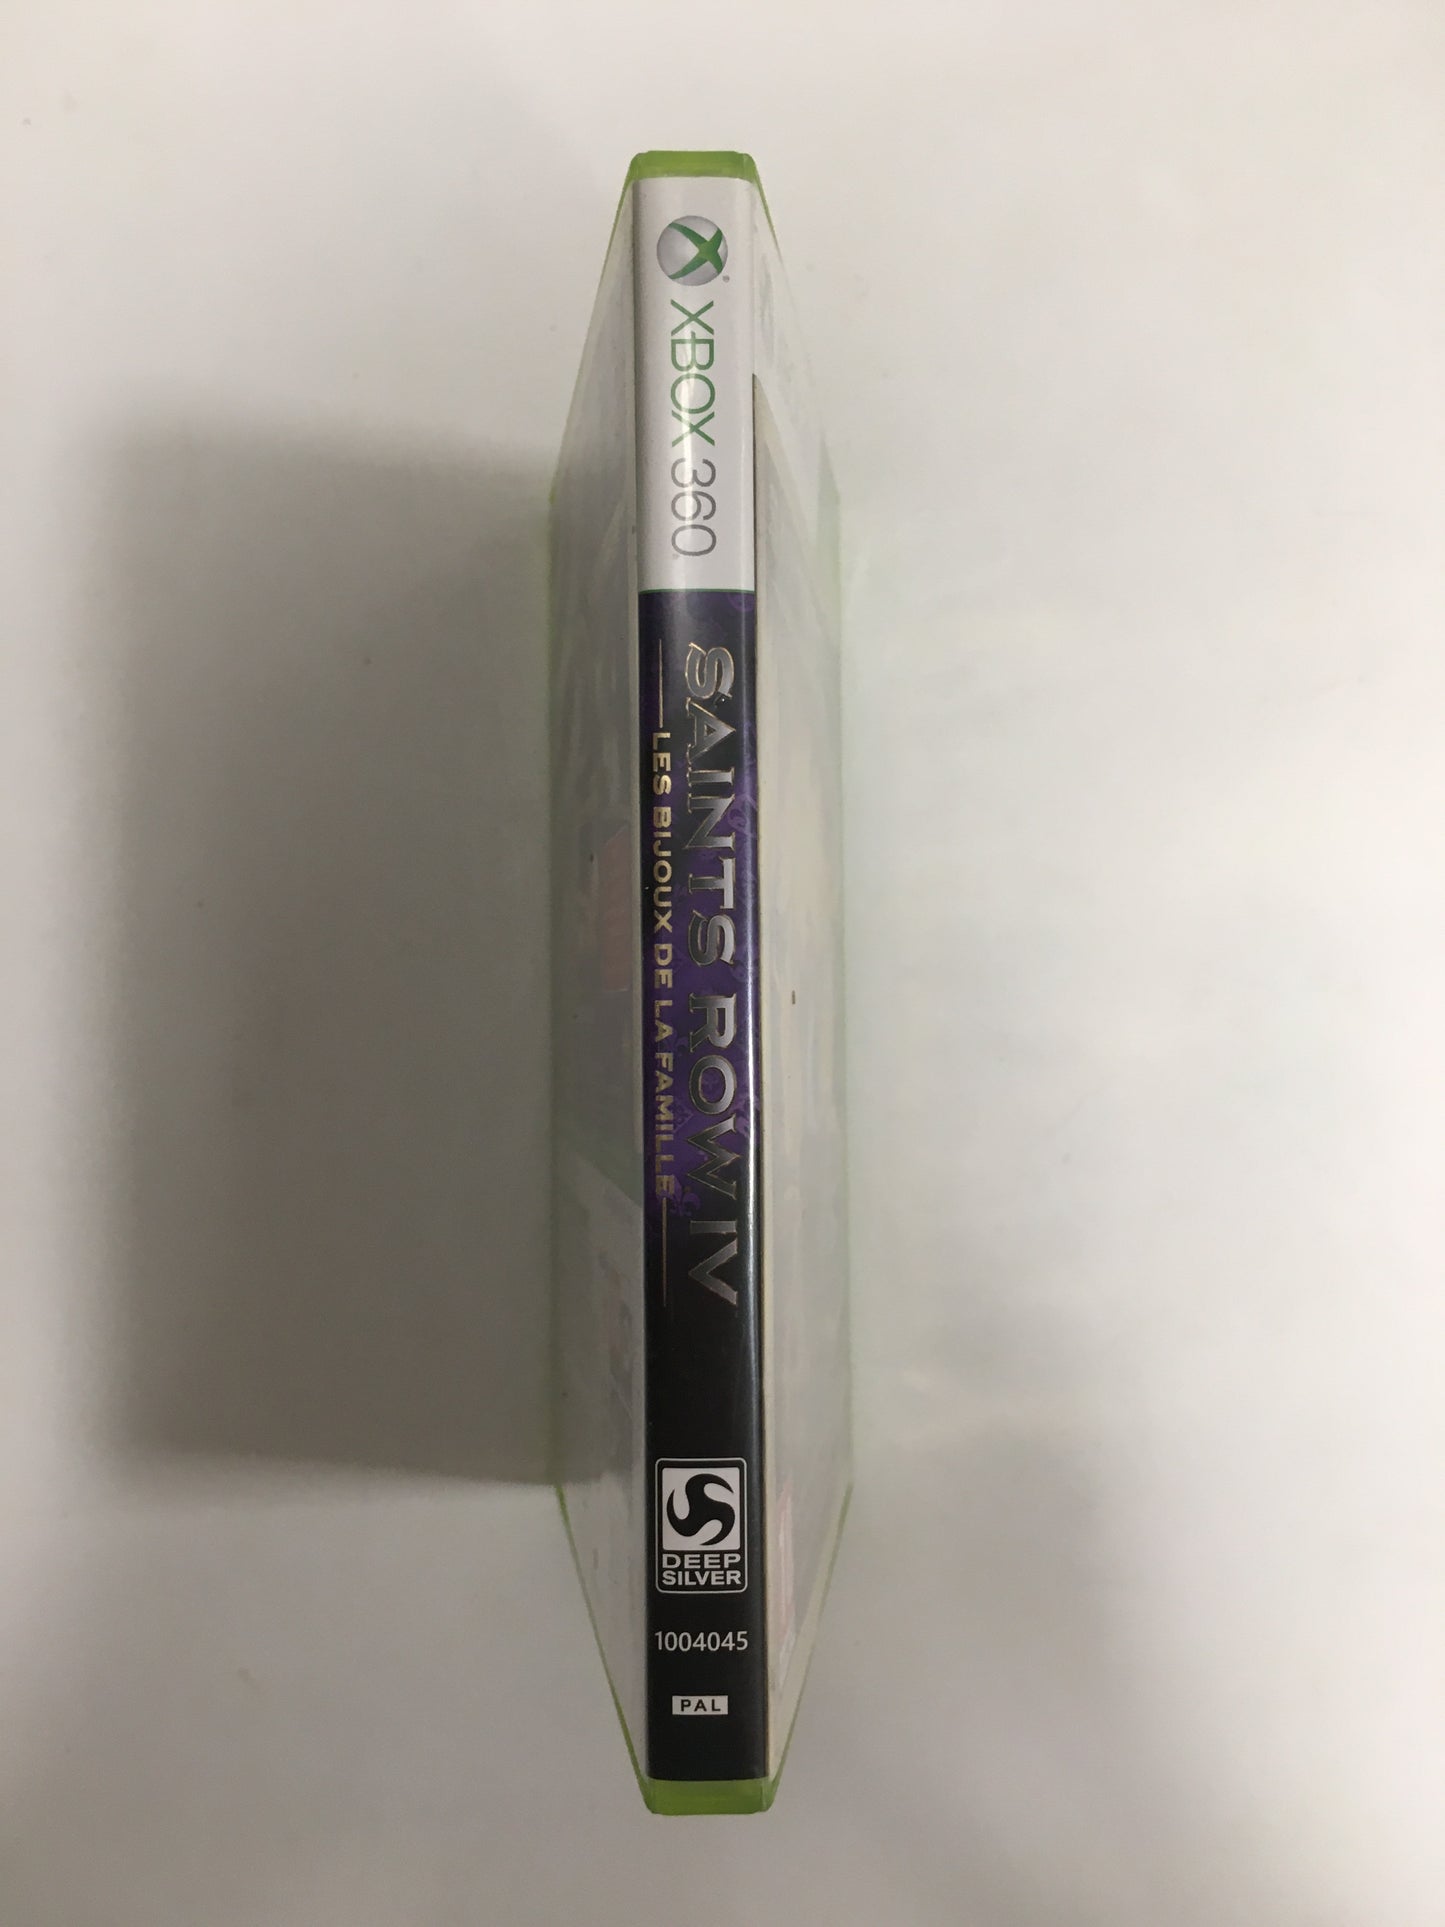 Saints row 4 les bijoux de famille Xbox 360 avec notice